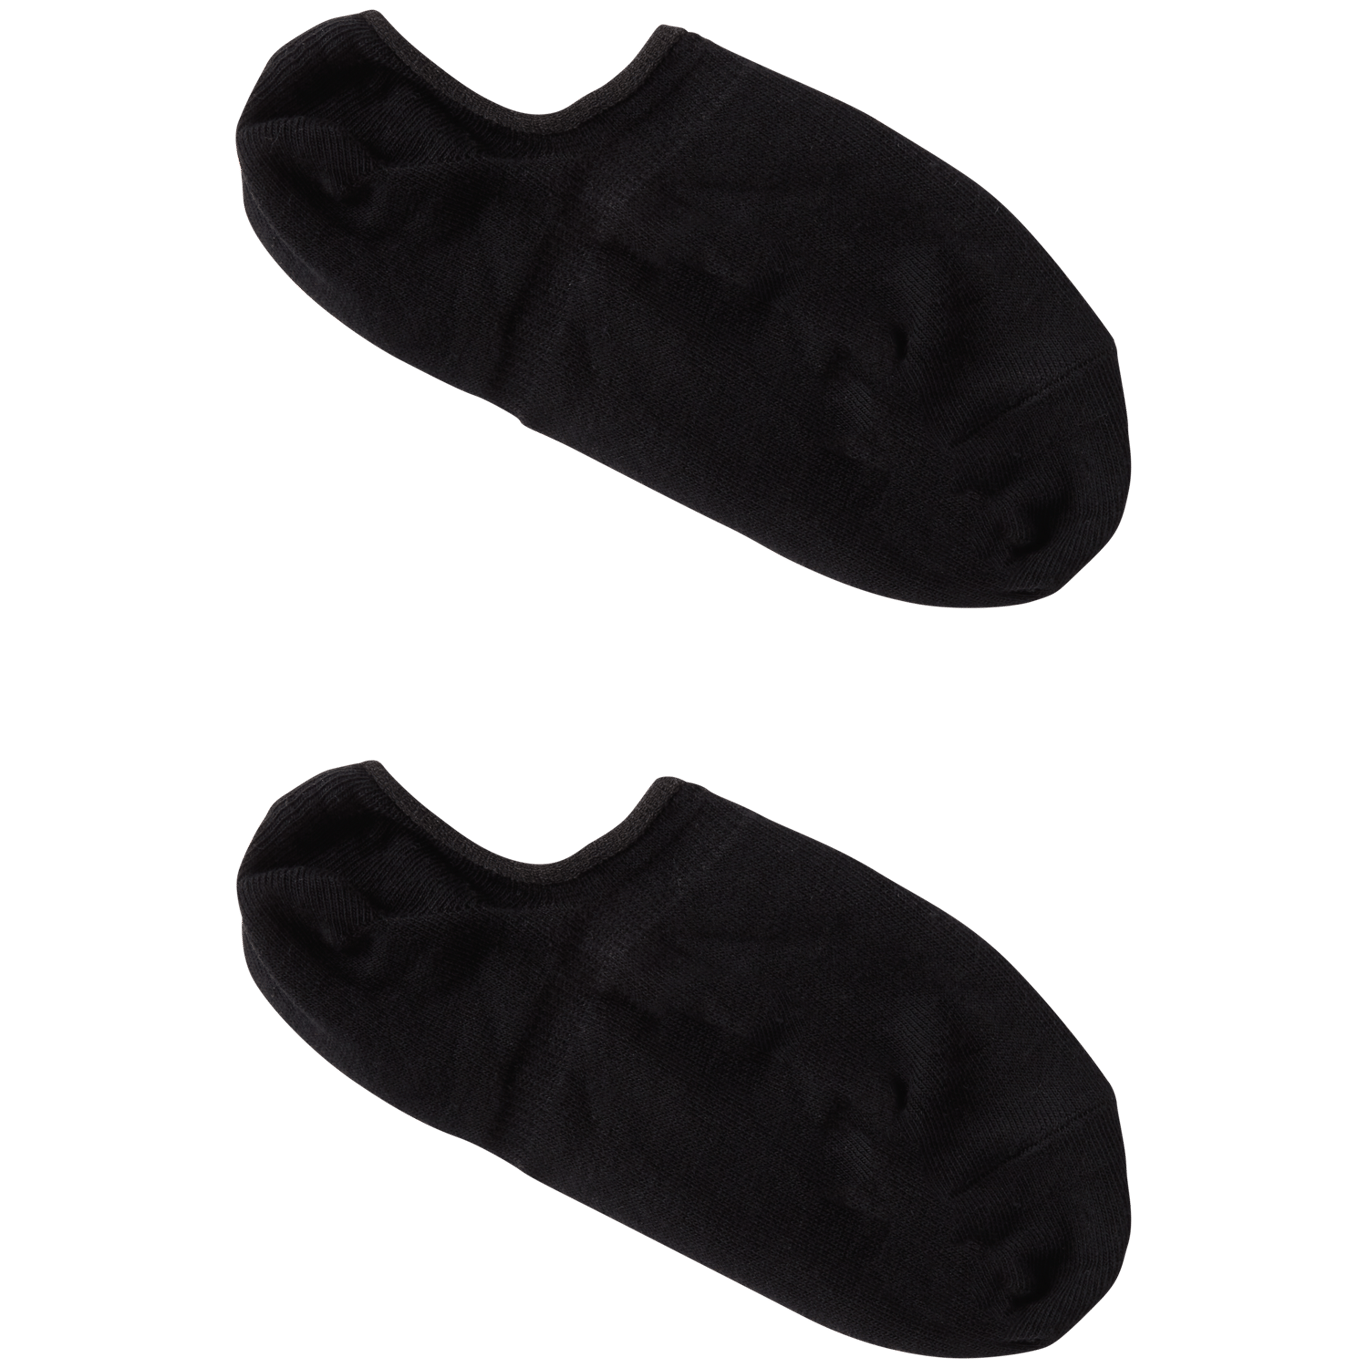 PAUNEW Chaussette Basse pour Femme homme 10 Paires Invisible Socquette de Sport en Coton Antiglisse des Décontractées 